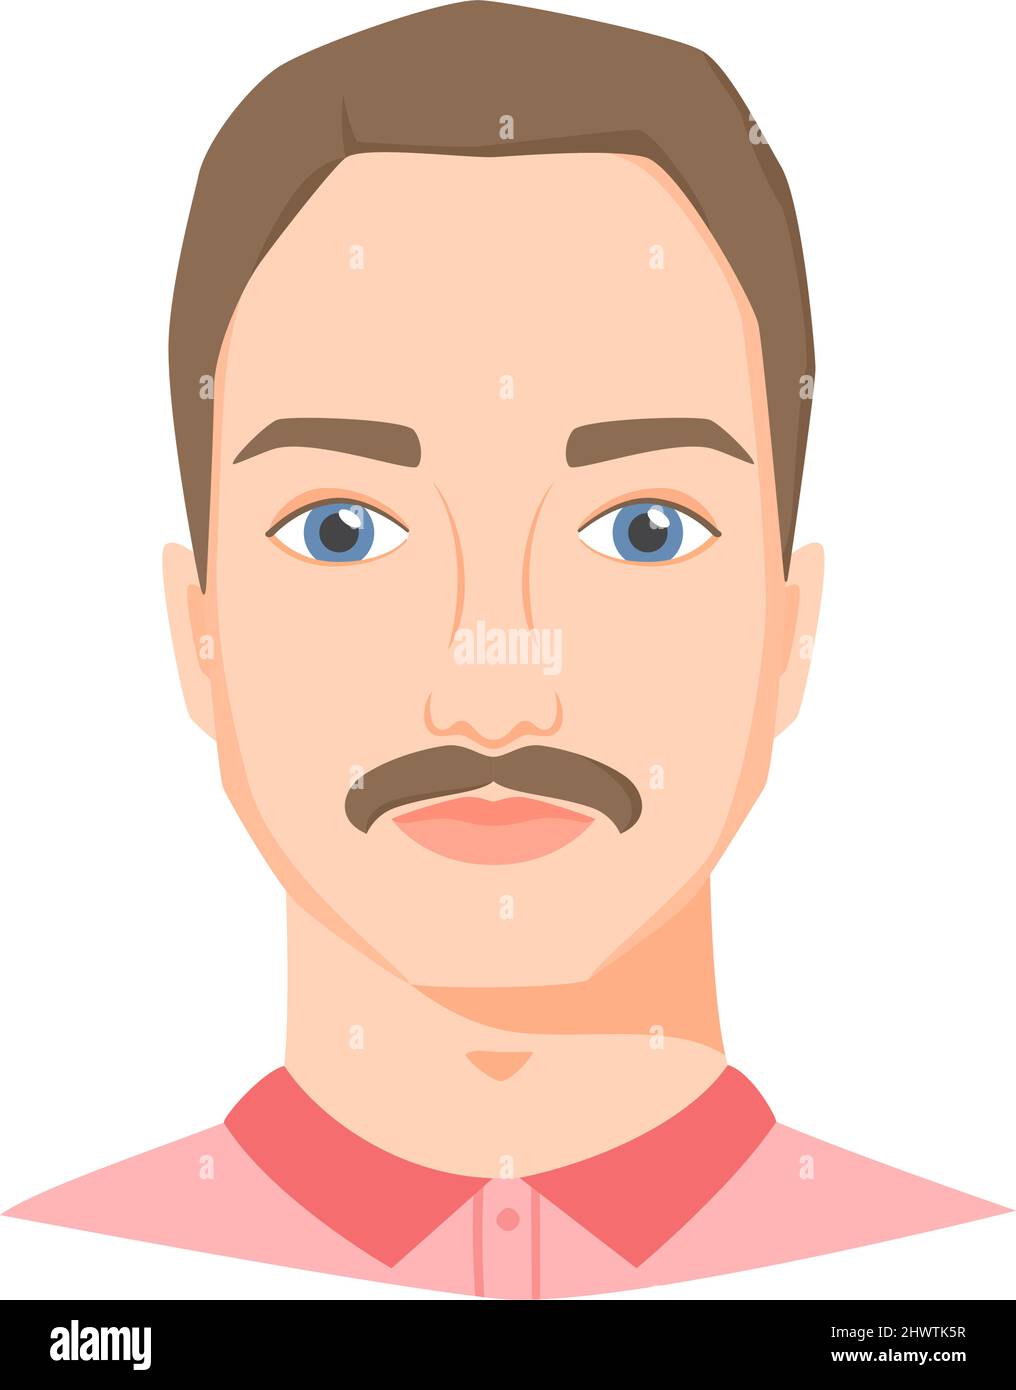 Joven rostro blanco con bigote. Retrato masculino o avatar en estilo plano. Vista frontal. Vector Ilustración del Vector